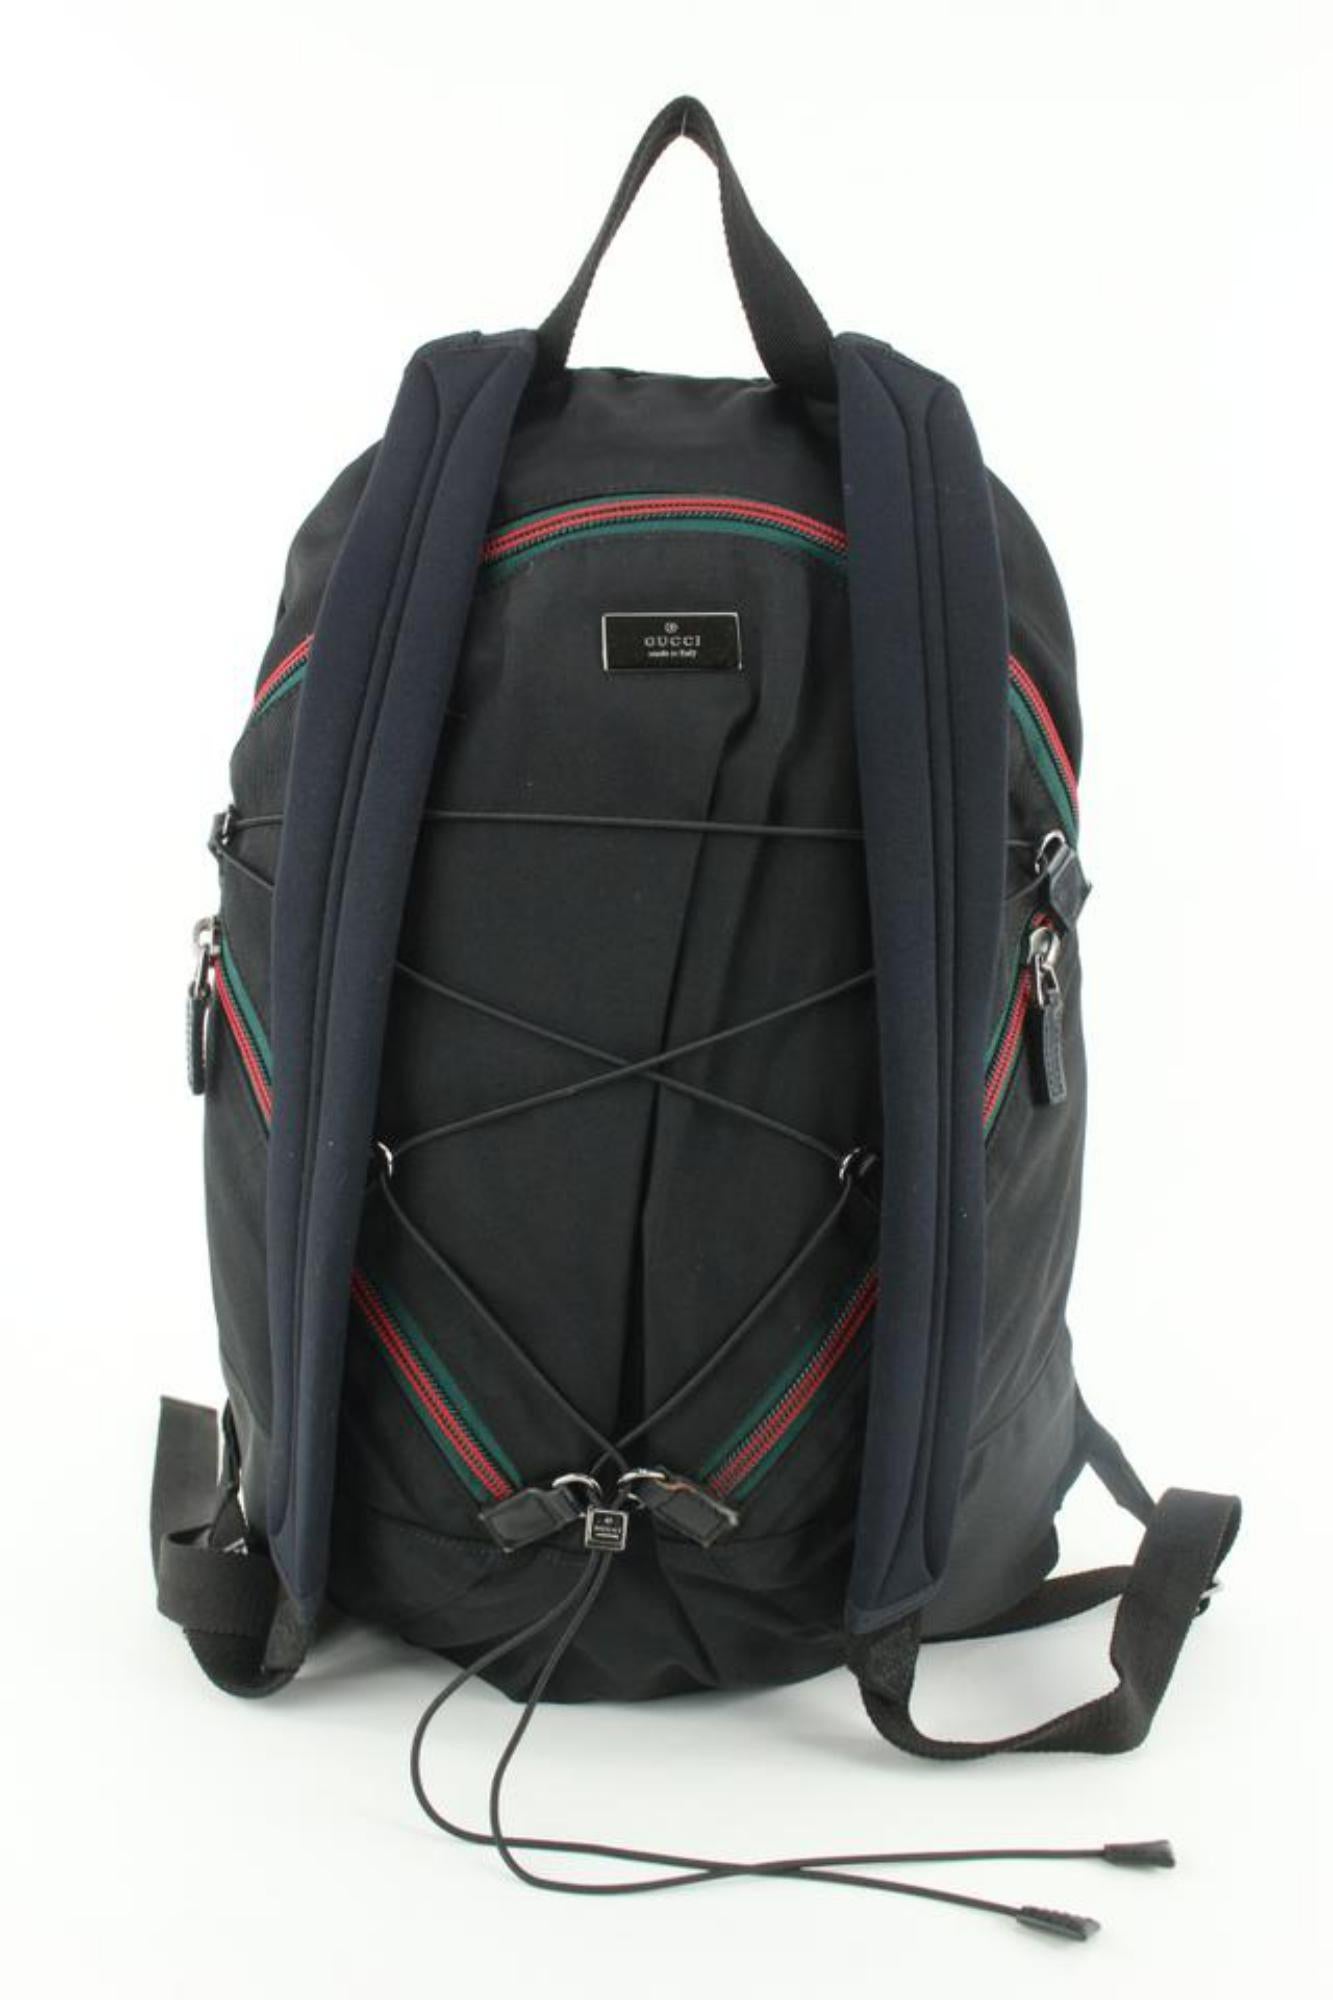 Gucci Black Nylon Web Hiking Backpack 1231g21 4